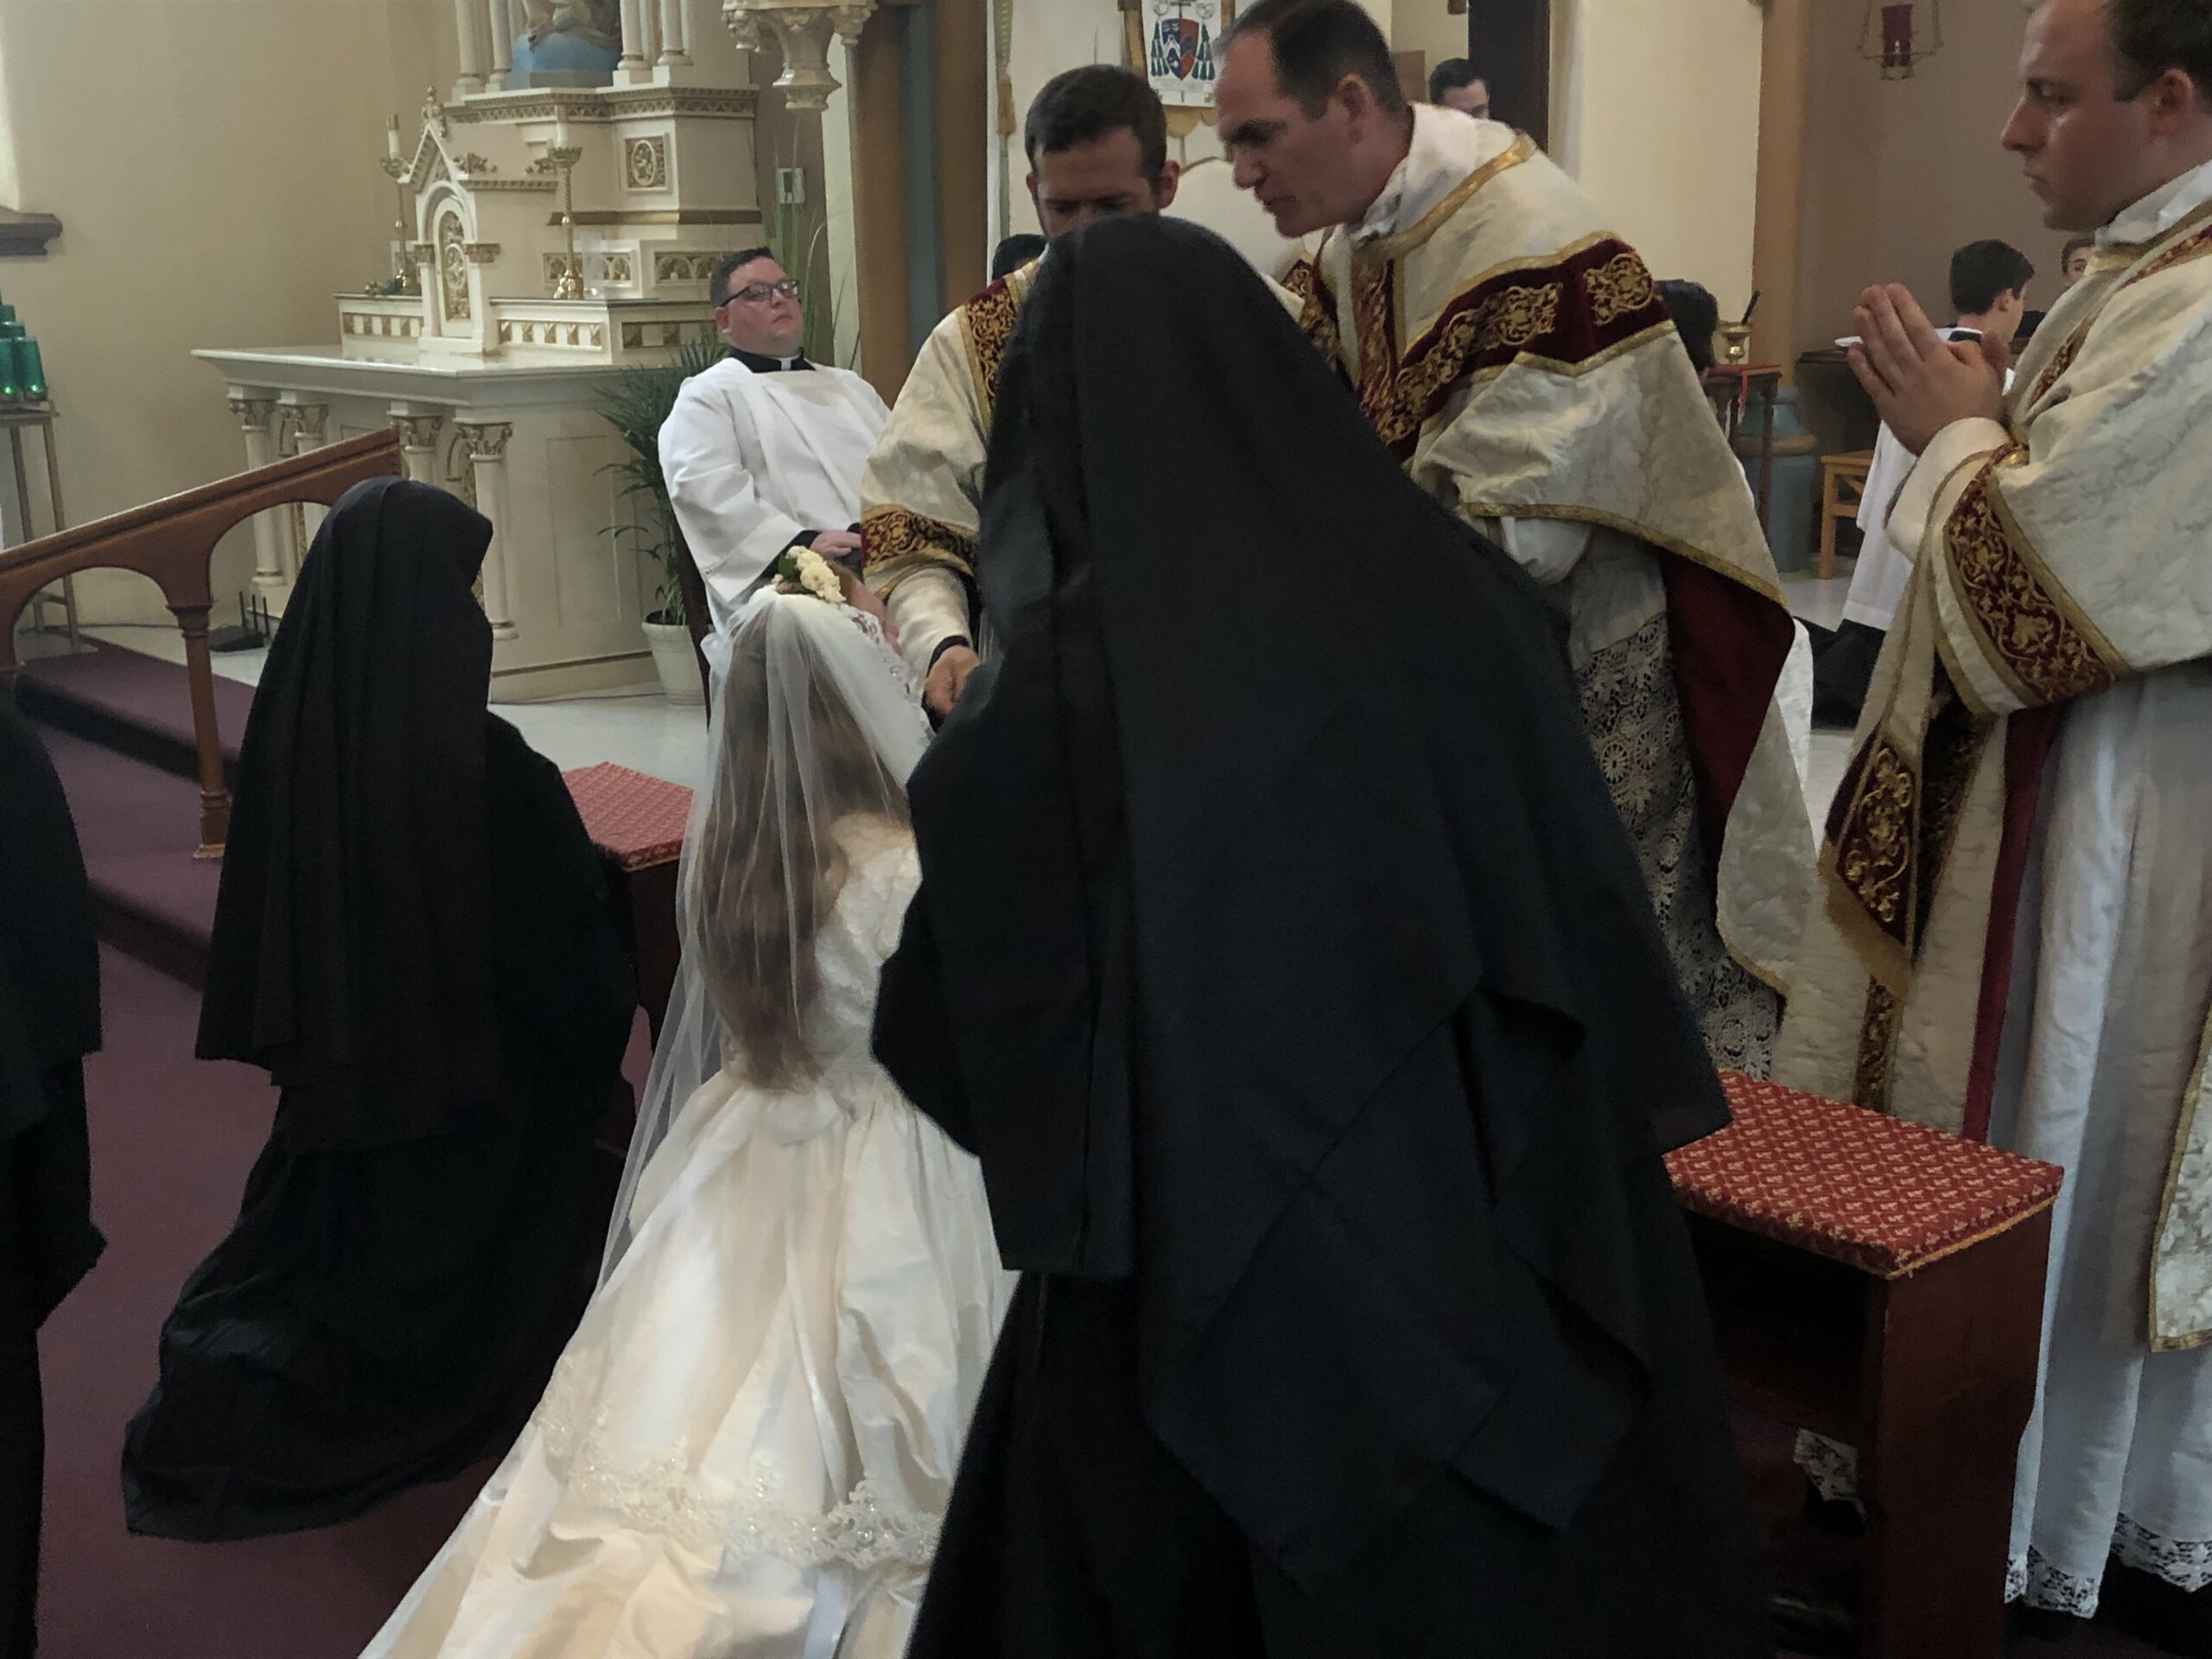 Gallery Ava ceremonies '22 - Benedictines of Mary